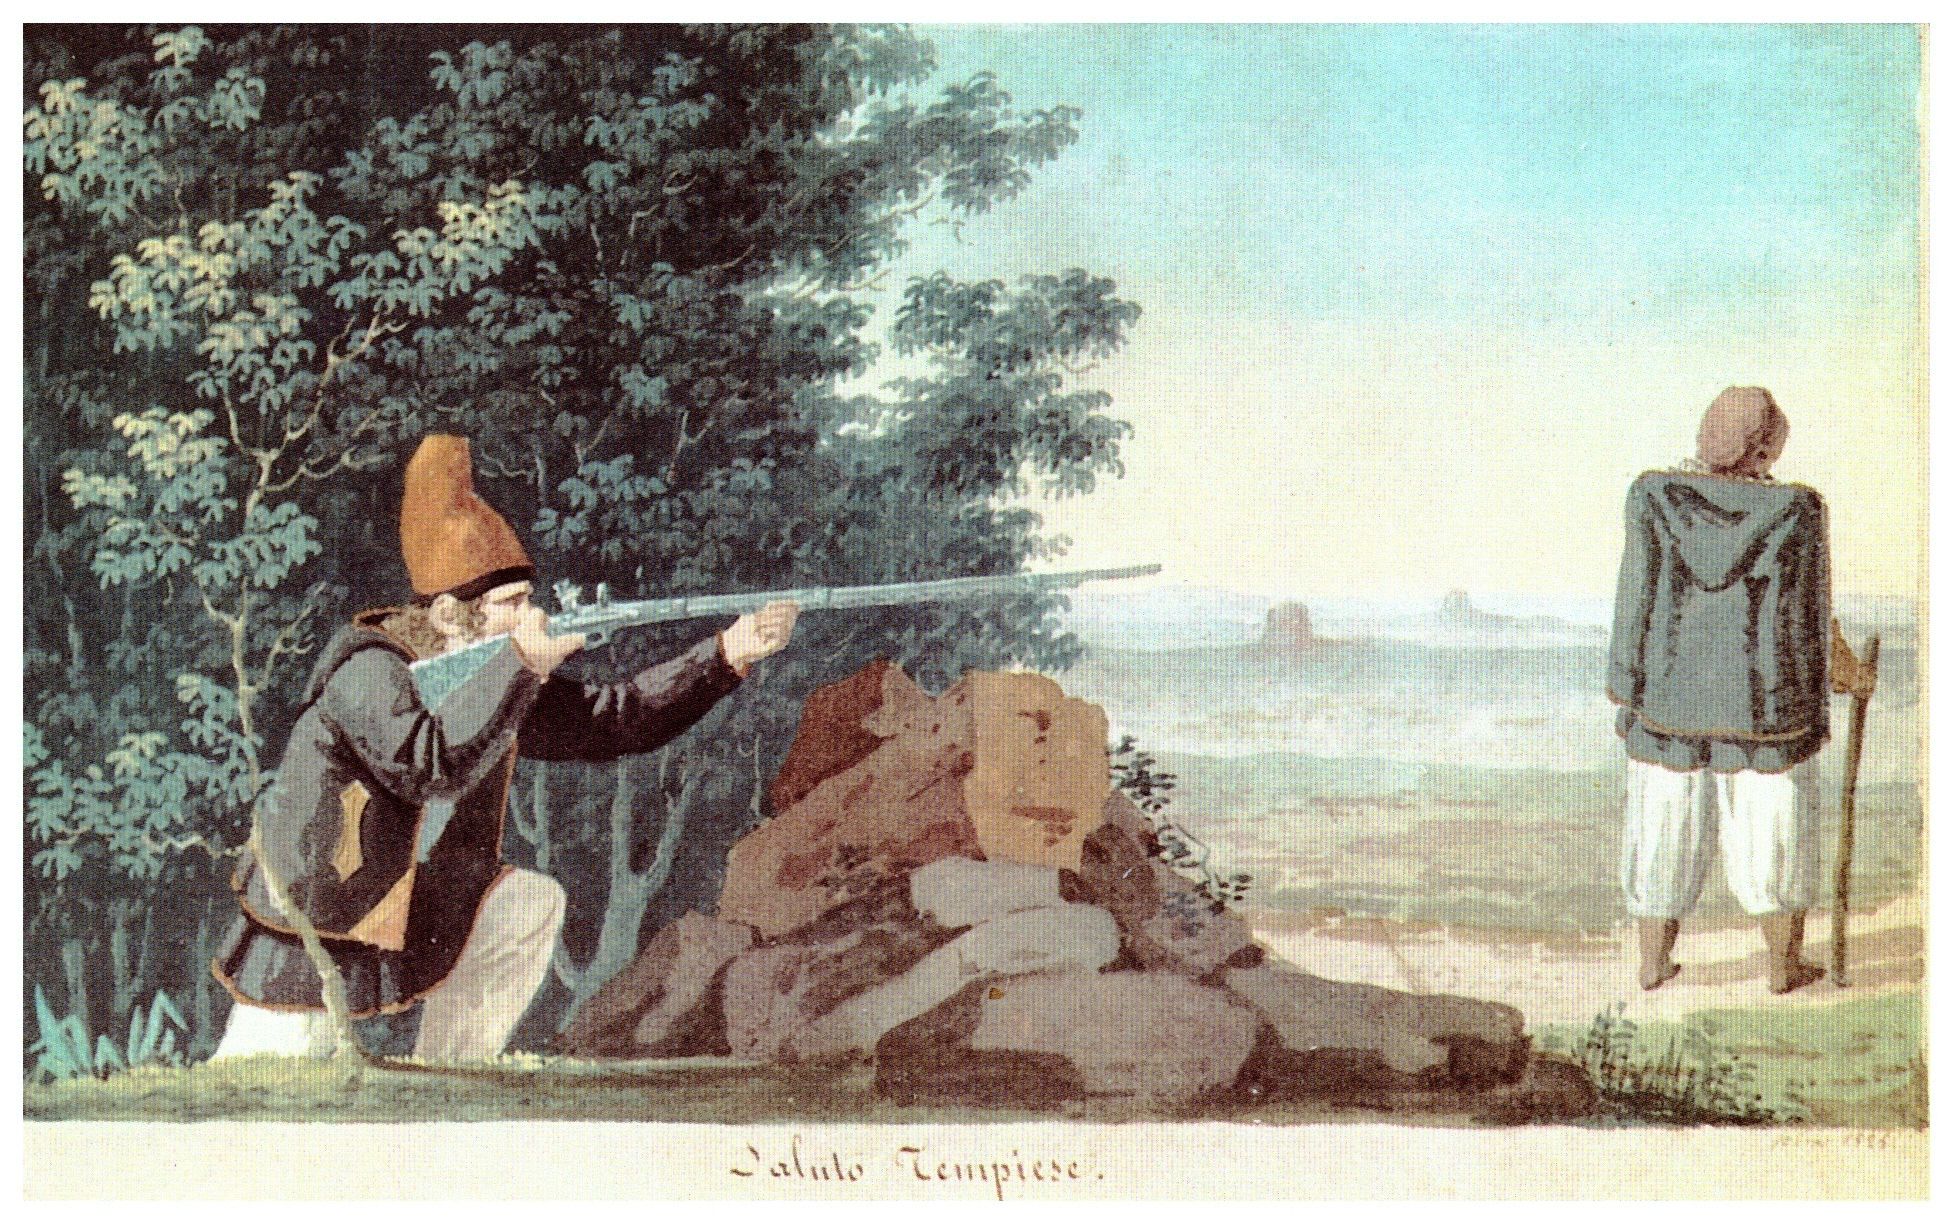 Giuseppe Cominotti - Tempiese greeting, 1825